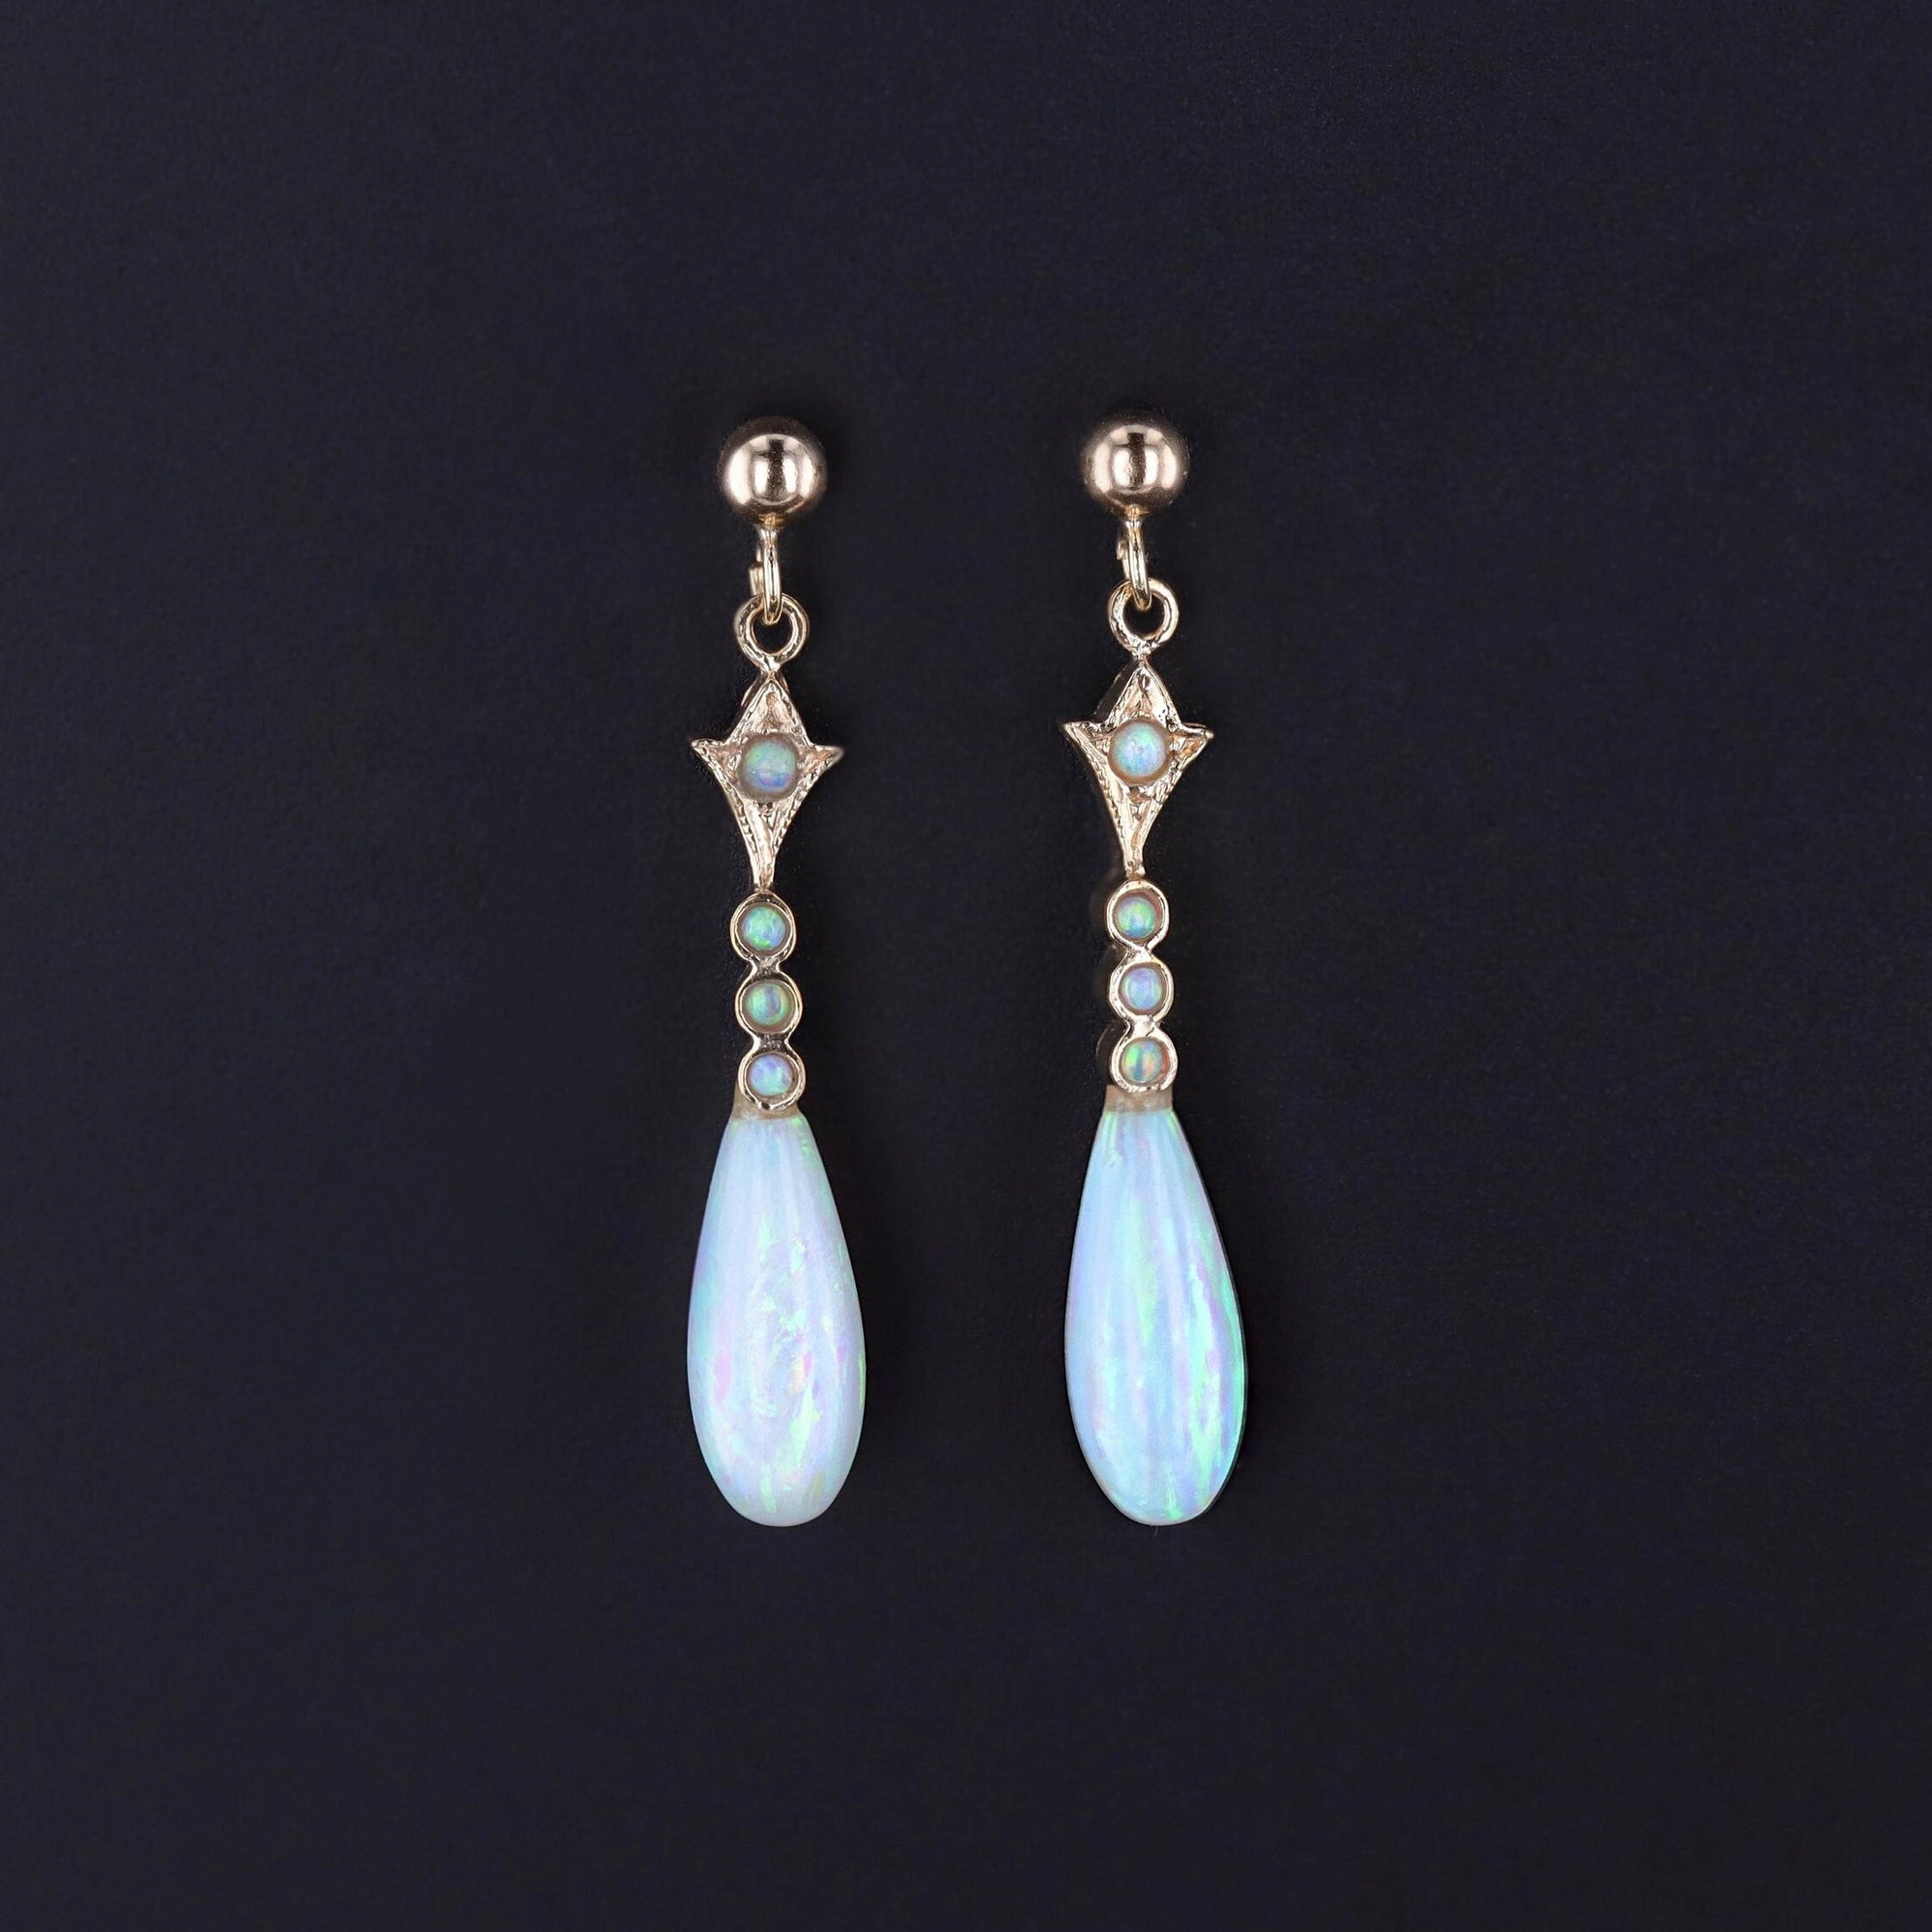 Antique Opal Earrings of 9k gold